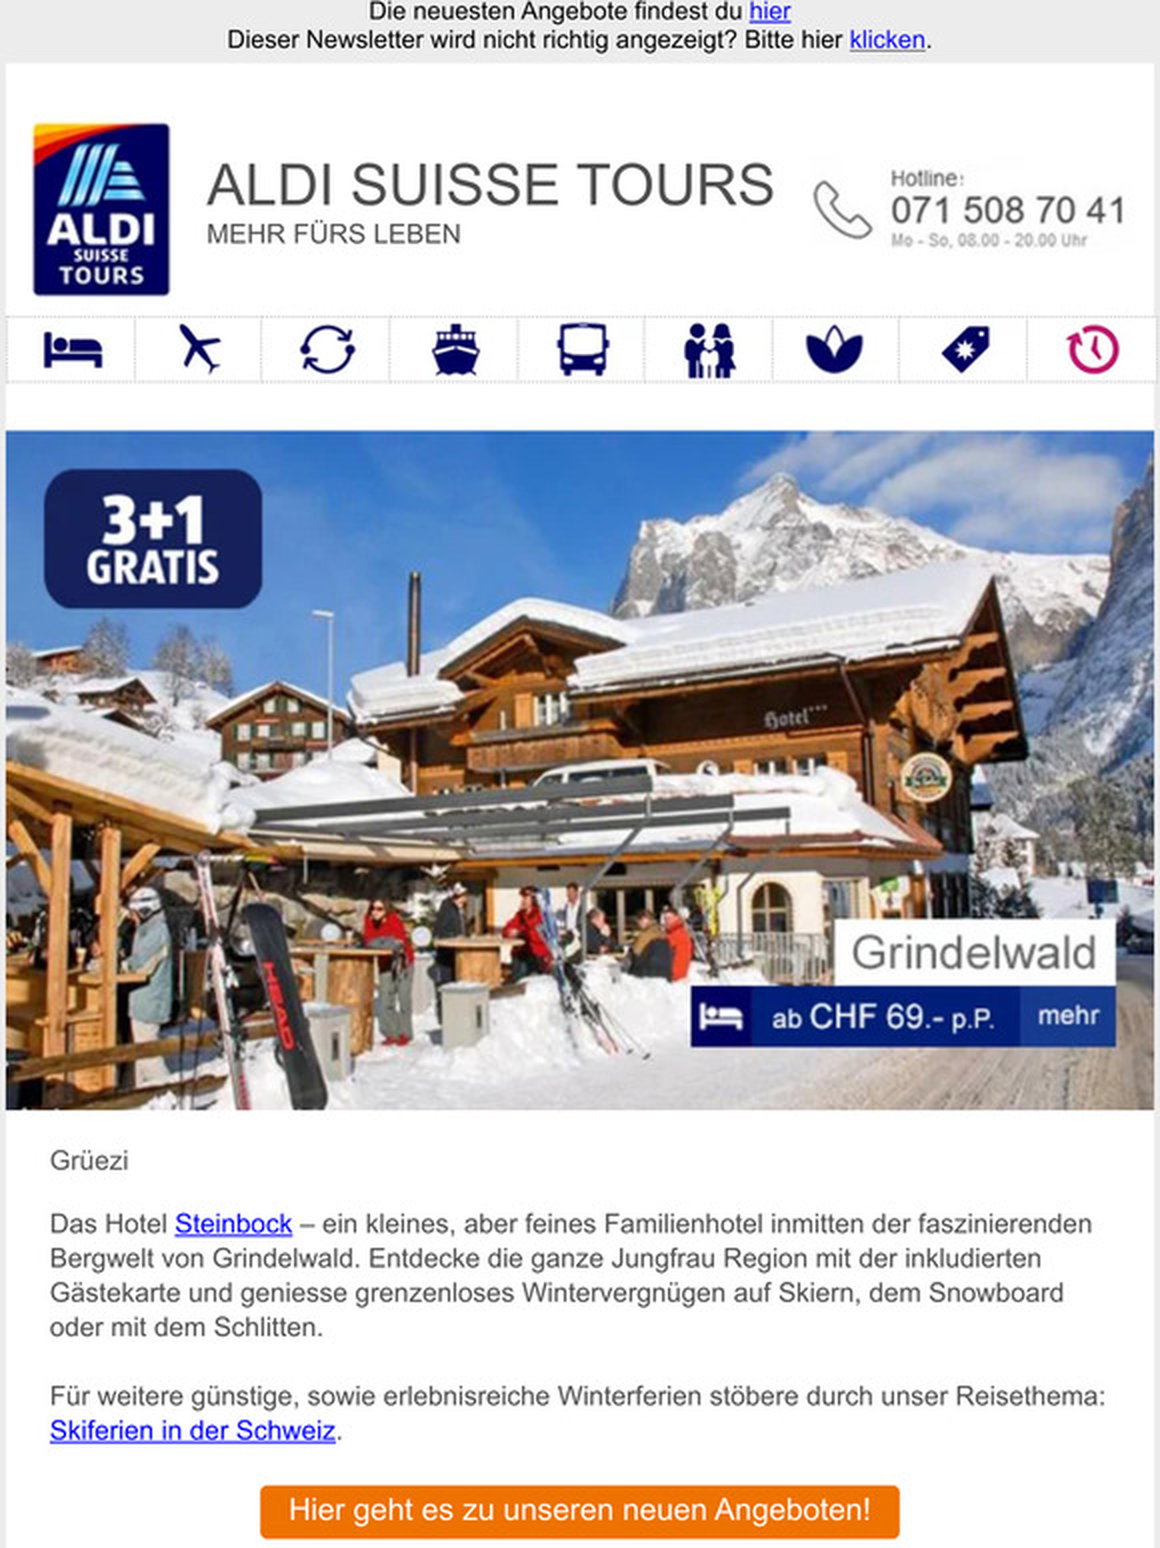 aldi suisse tours rabattcode